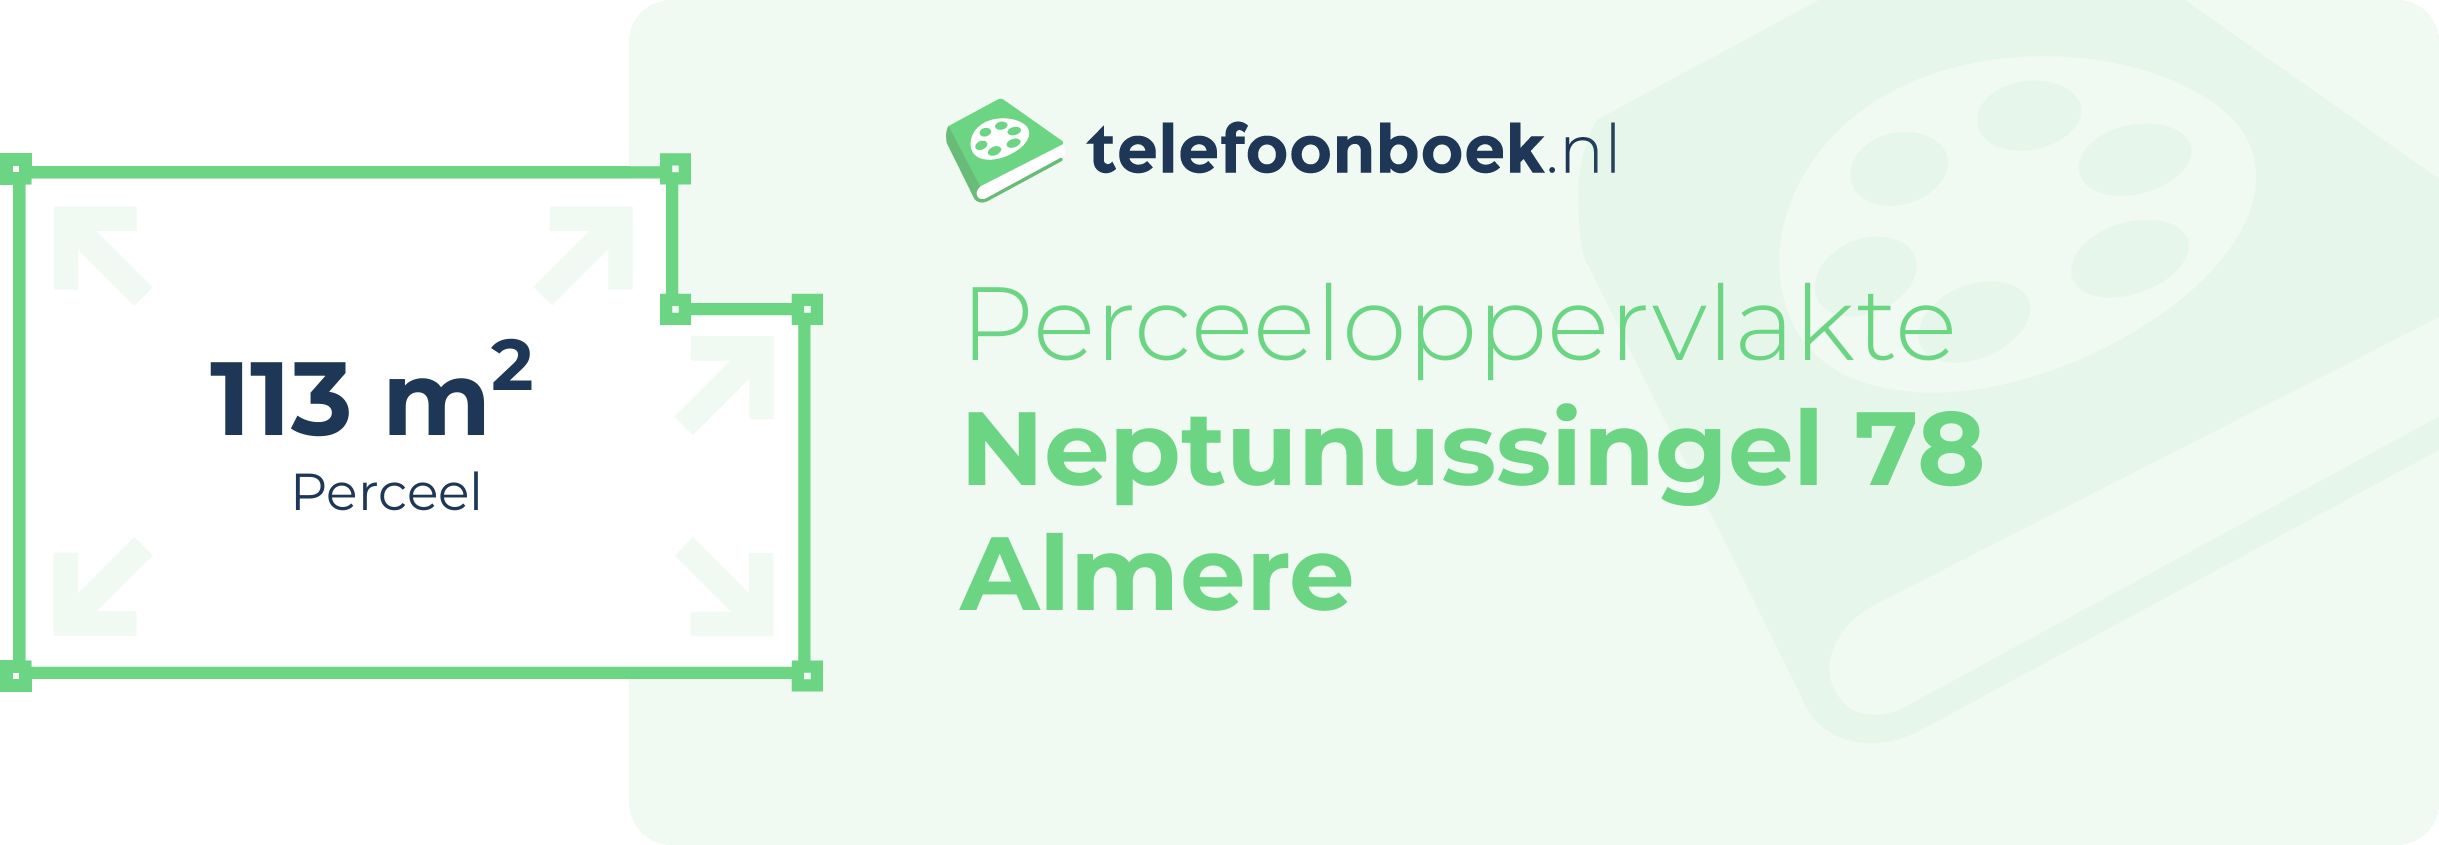 Perceeloppervlakte Neptunussingel 78 Almere